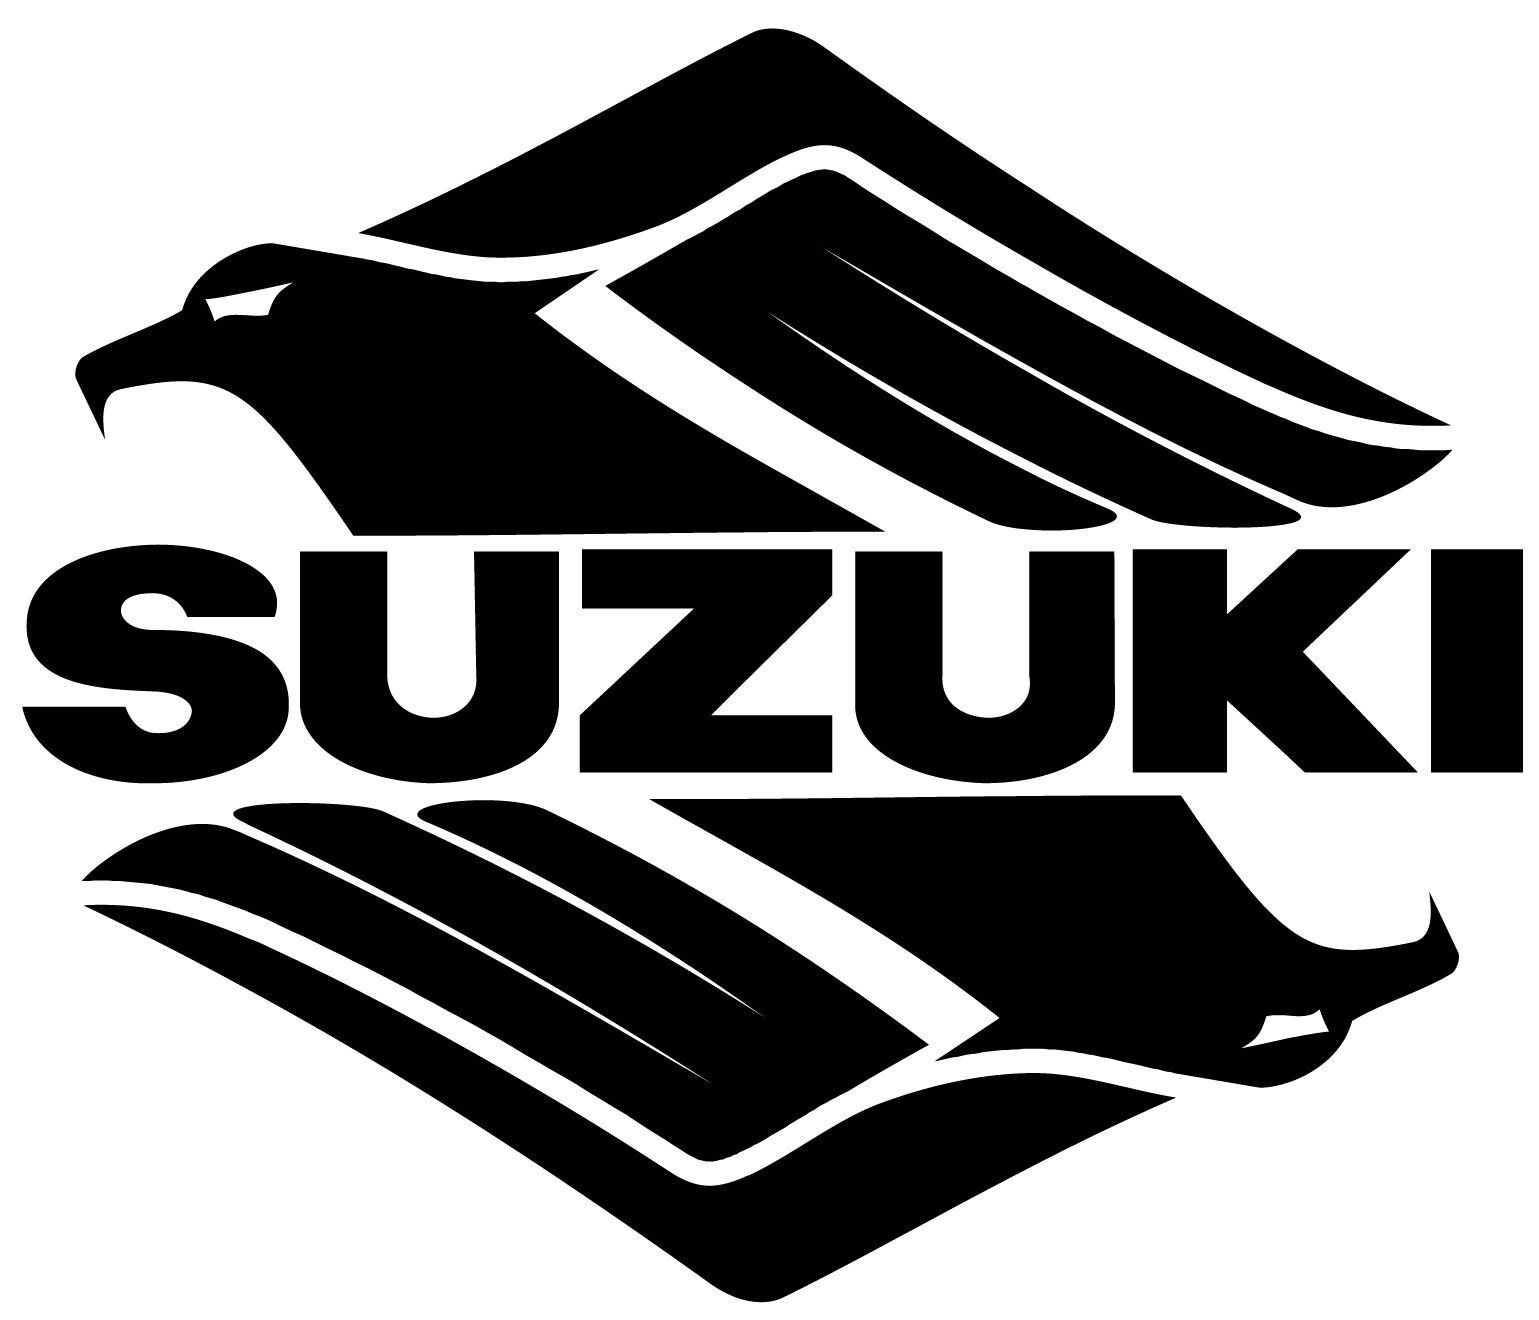 Suzuki Intruder Bird Vinyl Decal Window Sticker Motorcycle Street Bike Tank